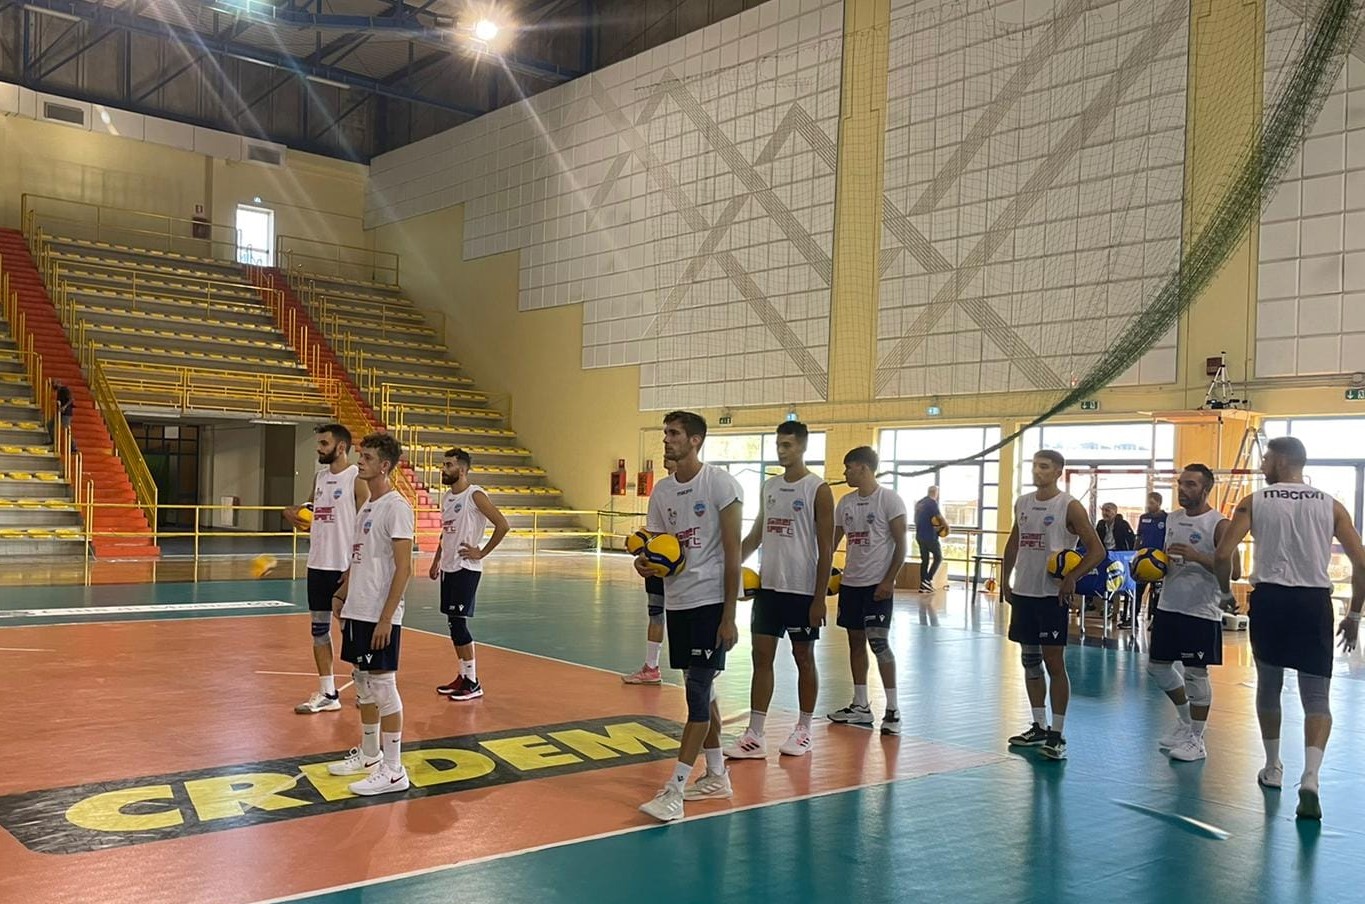 L'Avimecc Volley Modica fa le prove generali in vista dell'inizio ufficiale della stagione: al “PalaRizza” altro test match con la Savam Letojanni